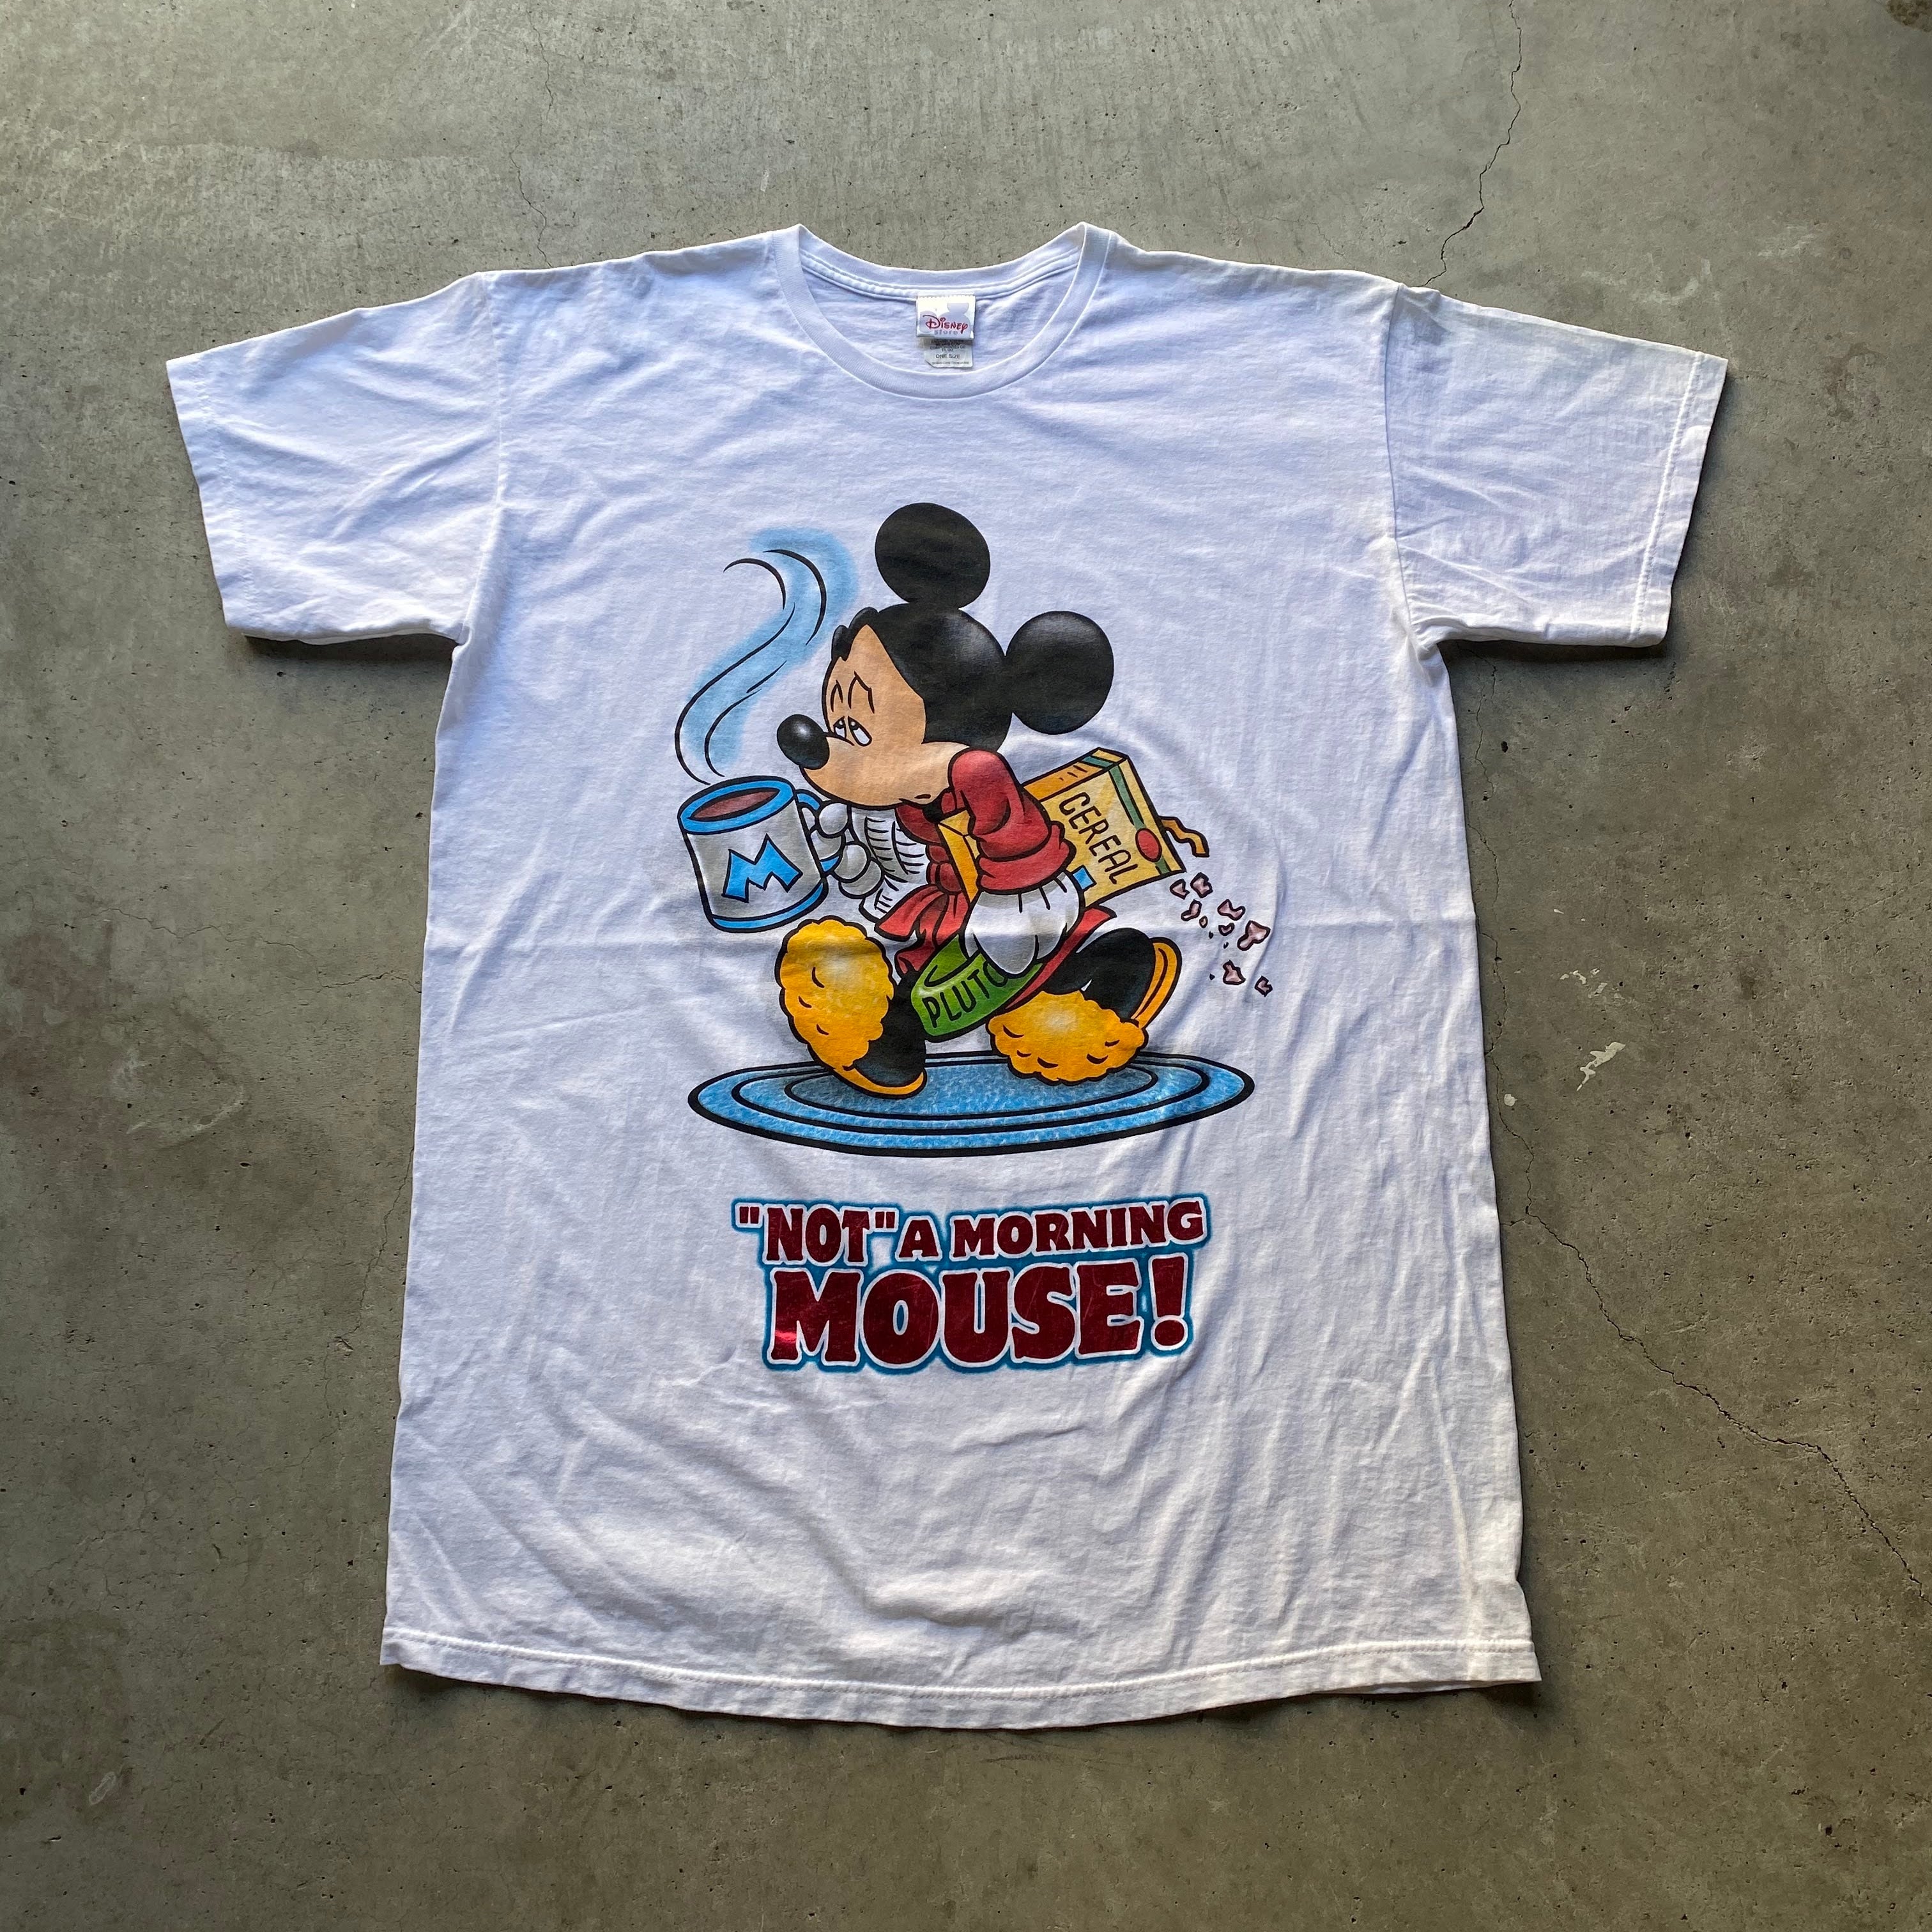 Disney ディズニー Mickey Mouse ミッキーマウス キャラクターTシャツ メンズ レディース 古着Tシャツ   cave  古着屋公式古着通販サイト